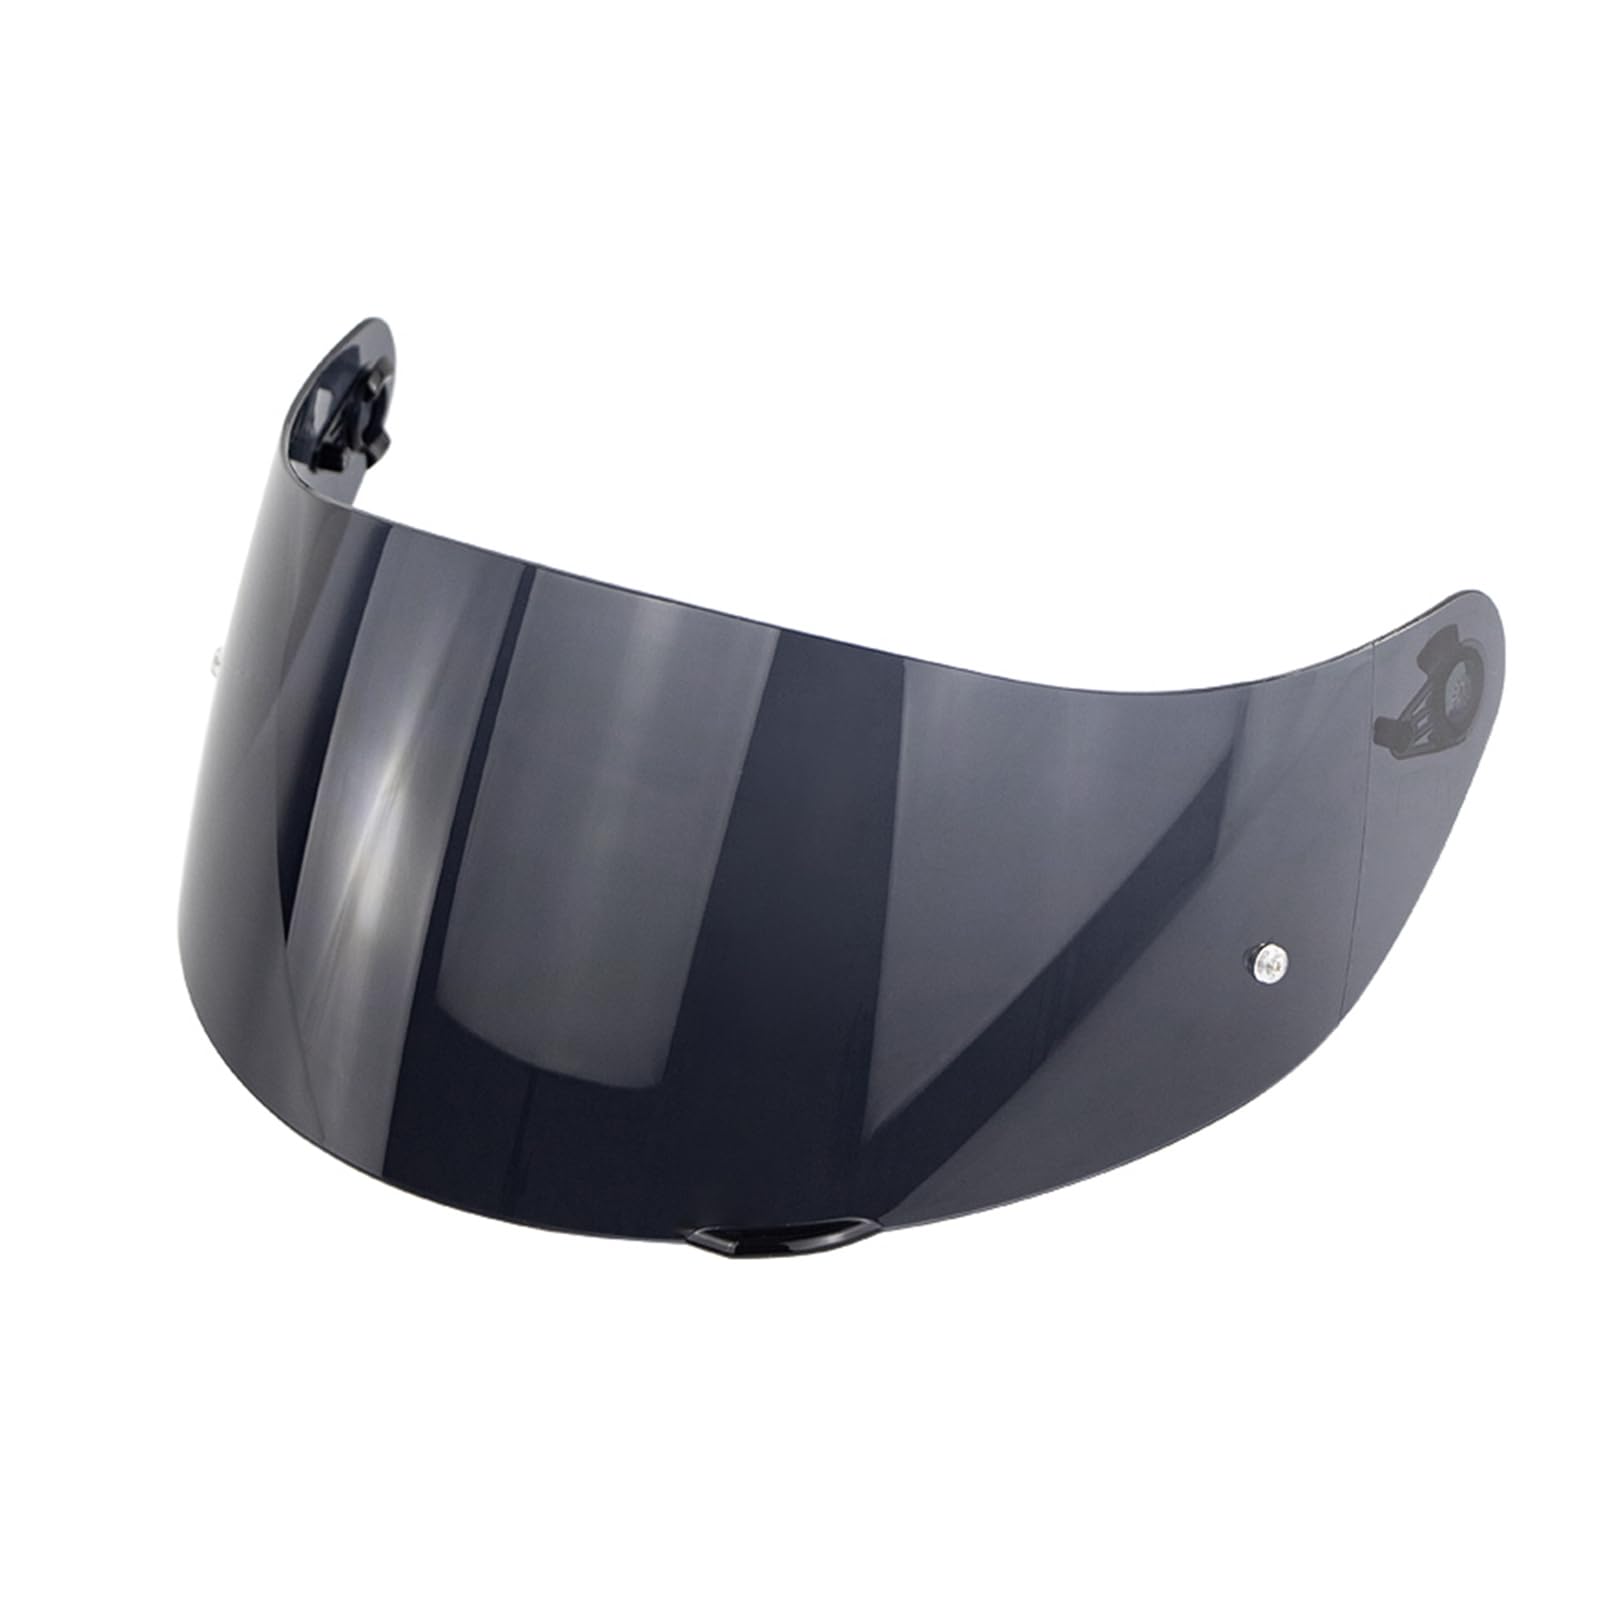 Shkalacar Motorrad Windschutzscheibe Helm Visier passen für AGV K1 K3SV K5, Windschutz Integralhelm Objektiv für Fahrsicherheit von Shkalacar